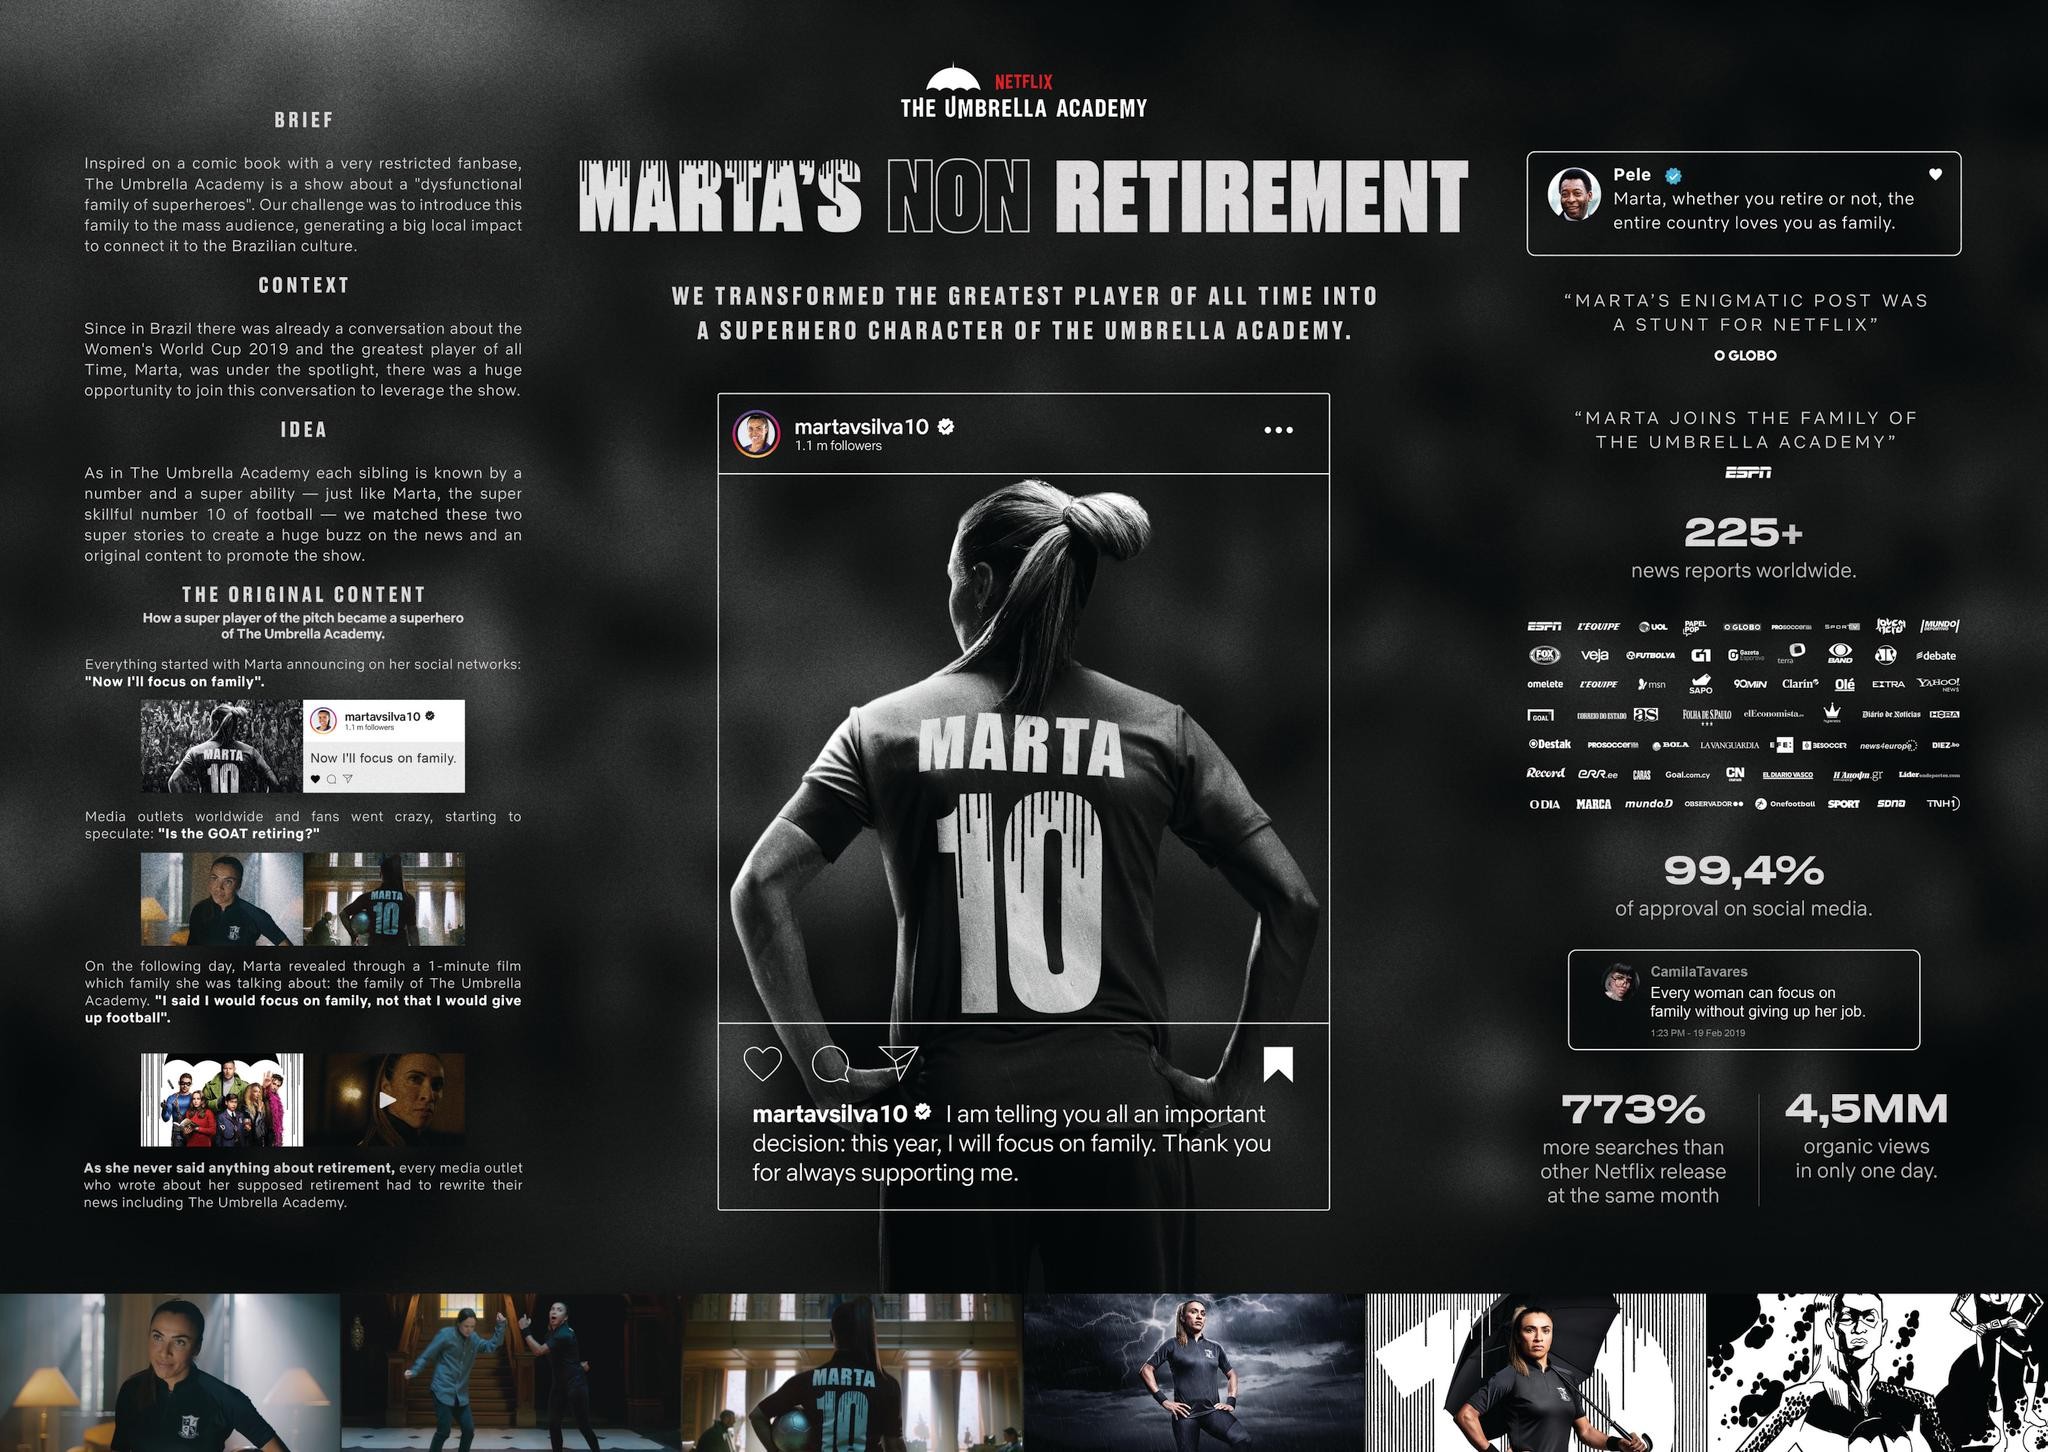 Marta's Non-Retirement